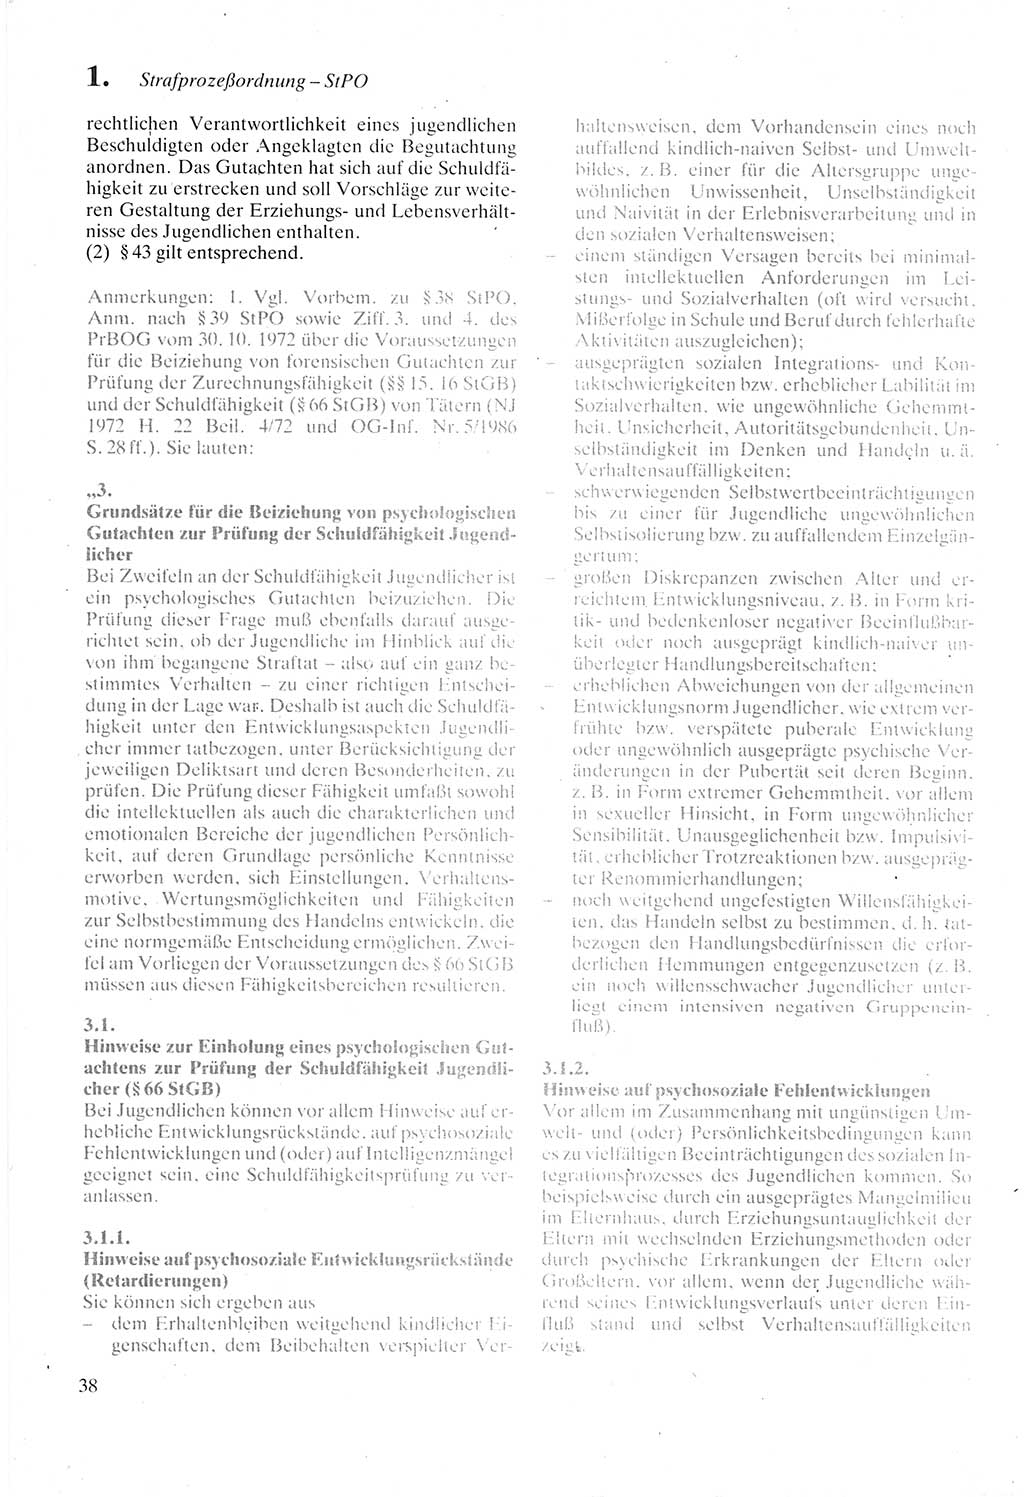 Strafprozeßordnung (StPO) der Deutschen Demokratischen Republik (DDR) sowie angrenzende Gesetze und Bestimmungen 1987, Seite 38 (StPO DDR Ges. Best. 1987, S. 38)